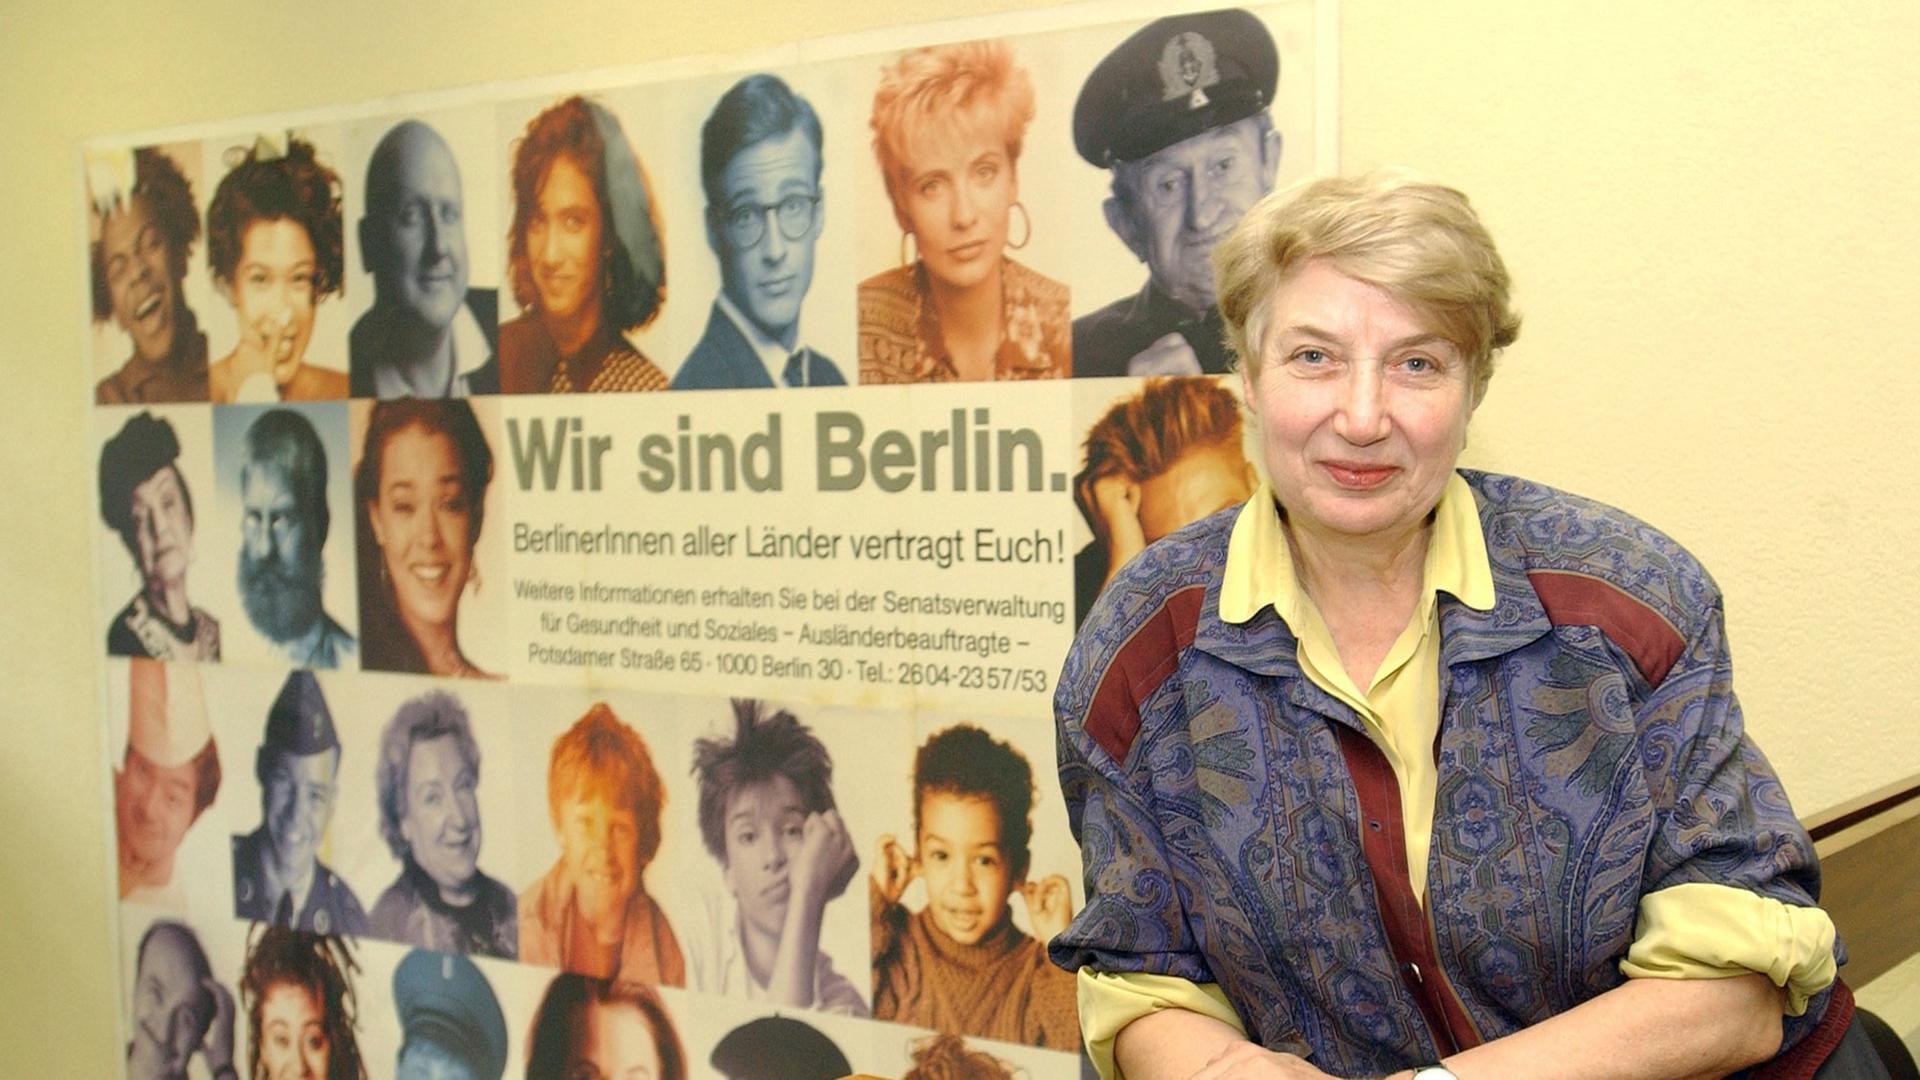 Die erste Ausländerbeauftragte in der Bundesrepublik (1981): Barbara John. In mehr als 20 Amtsjahren hat sie sich bei der Türkischen Gemeinde in Berlin großen Respekt erworben.